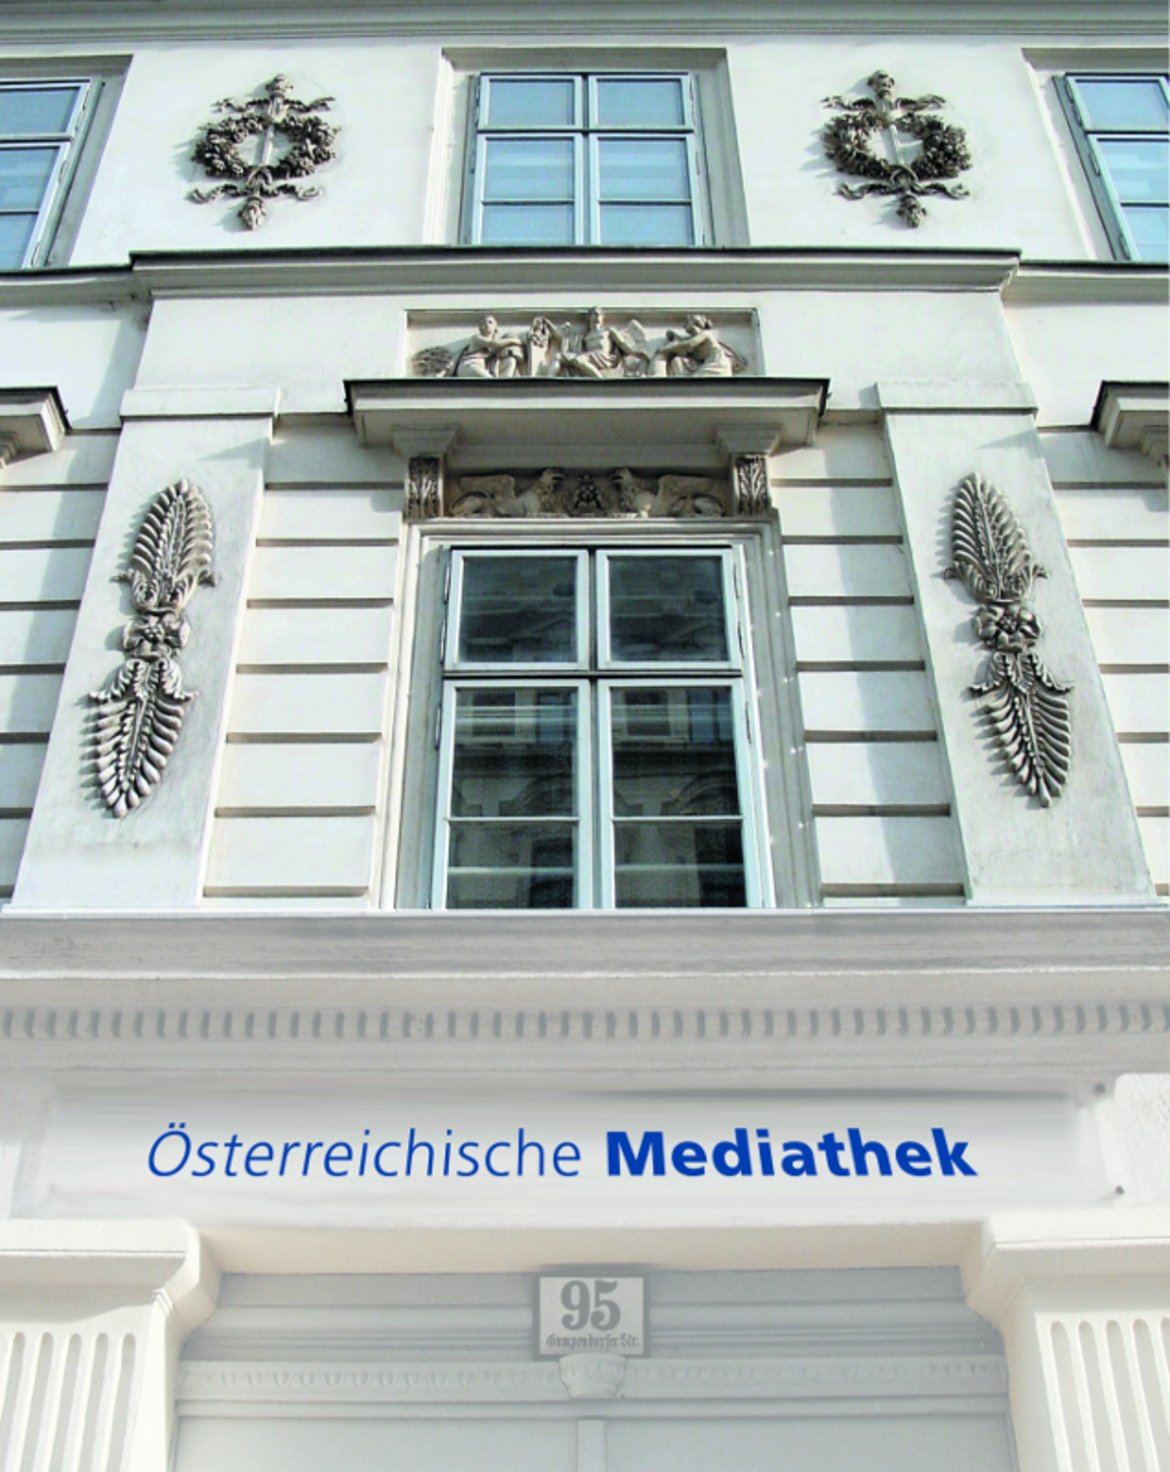 Mediathek Fassade / Österreichische Mediathek